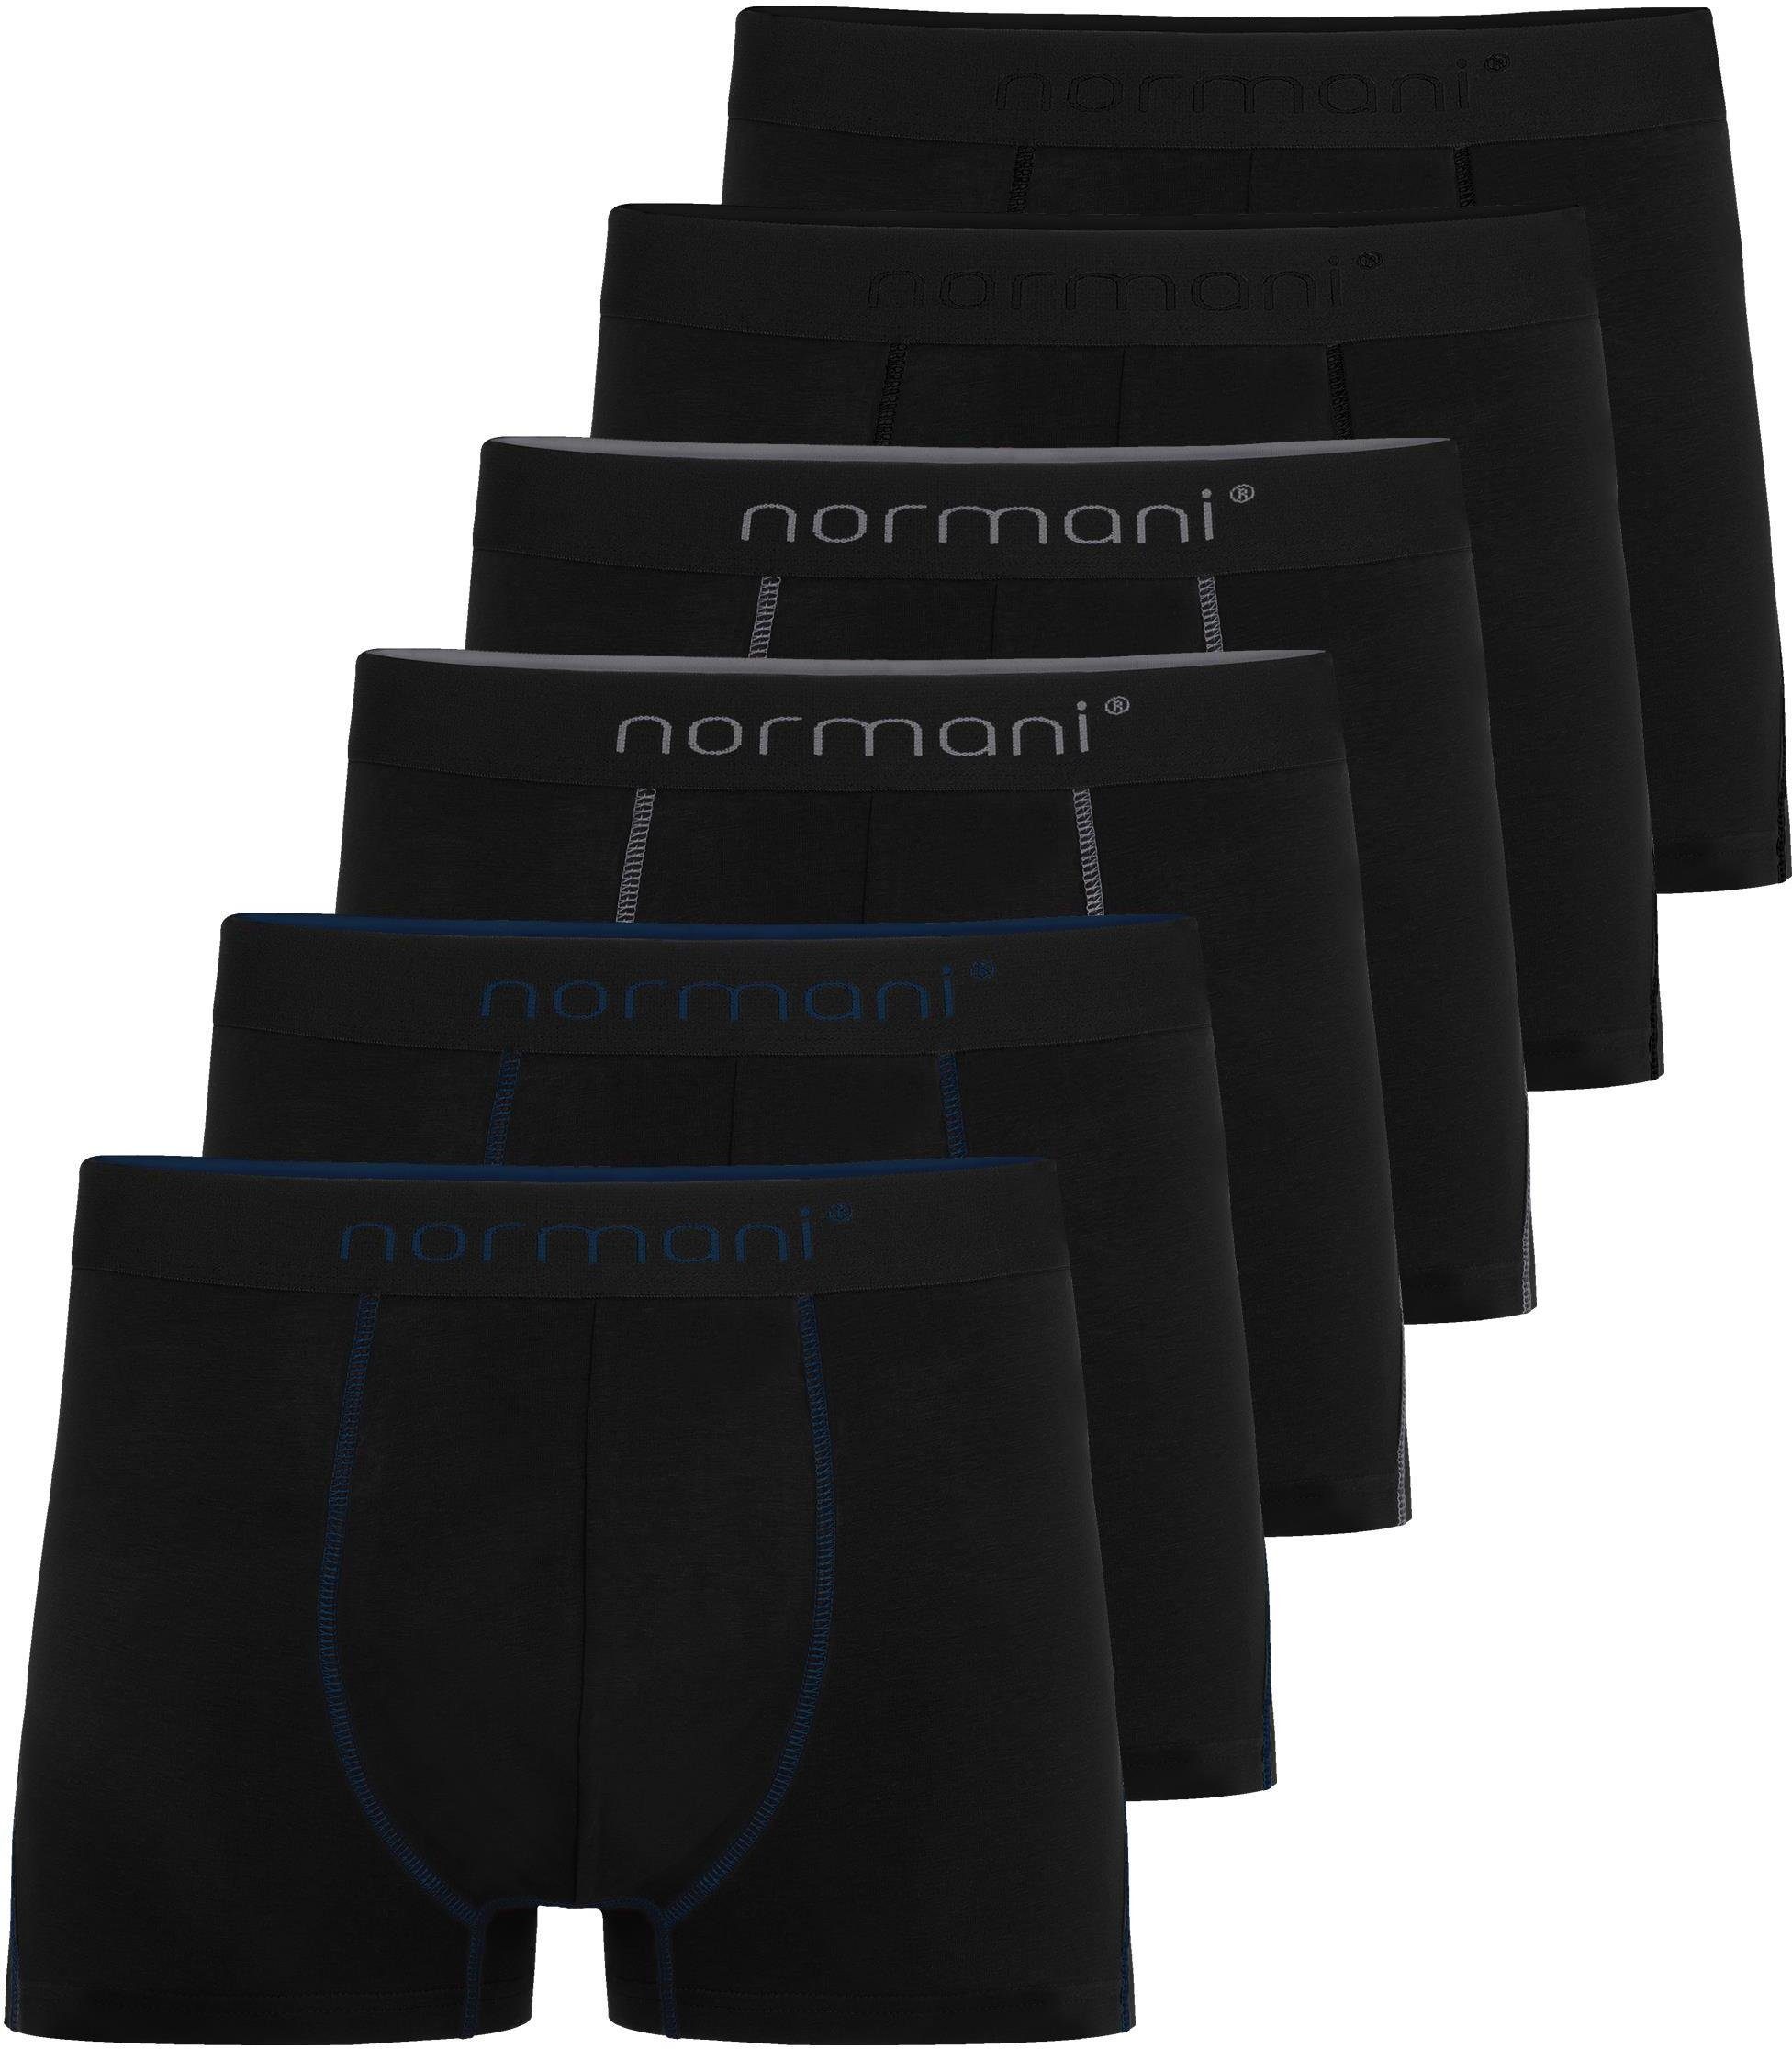 normani Boxershorts 6 Herren Baumwoll-Boxershorts Unterhose aus atmungsaktiver Baumwolle für Männer Grau/Dunkelblau/Schwarz